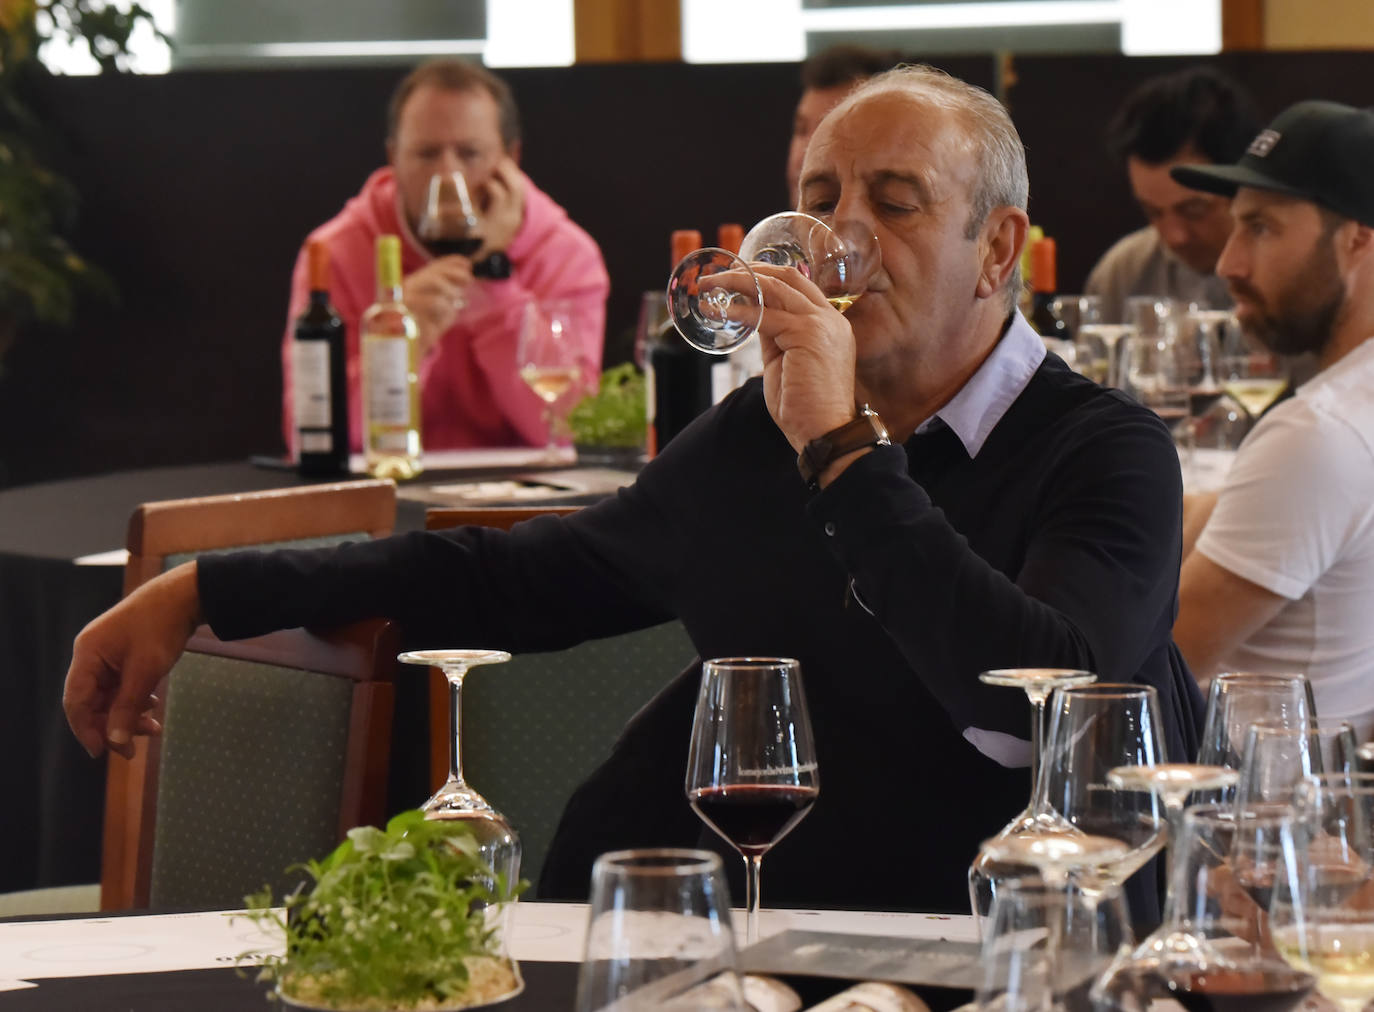 Cata de los vinos de Franco Españolas tras el torneo de golf